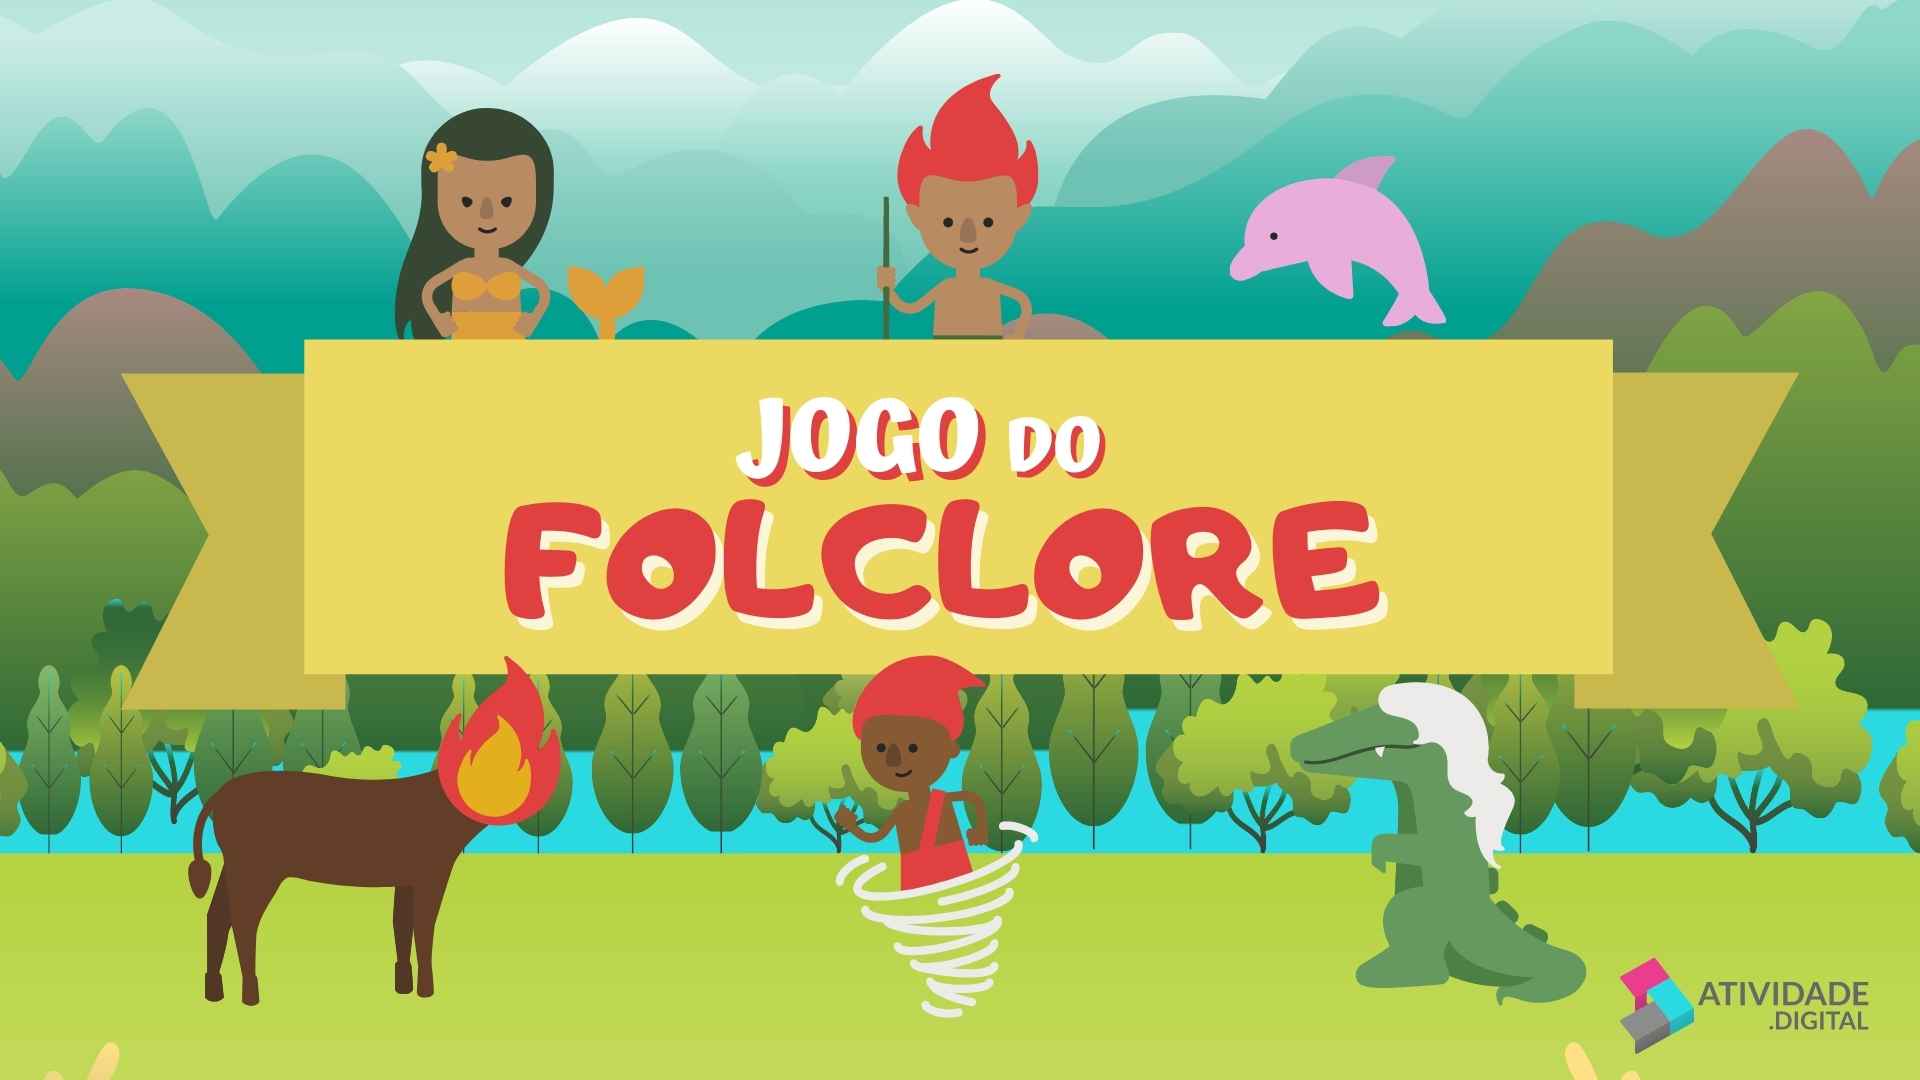 Clipping] Folclore e língua portuguesa são temas de jogo educativo